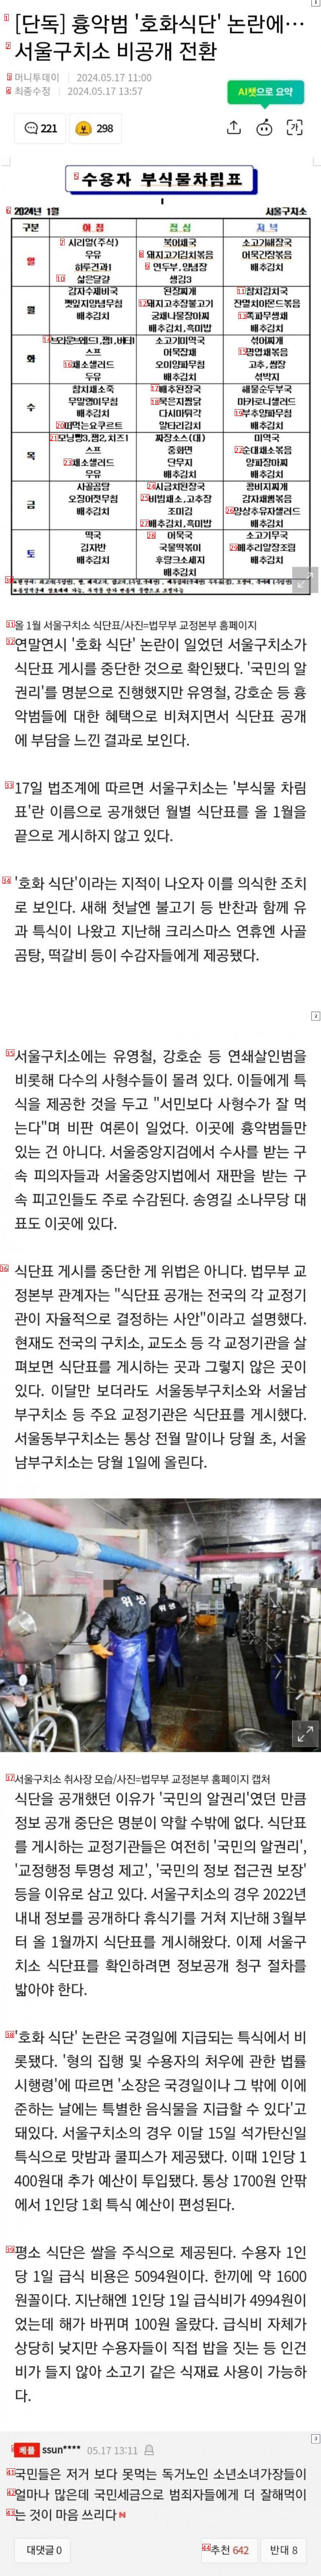 흉악범 ''호화식단'' 논란에... 서울구치소 식단 비공개 전환